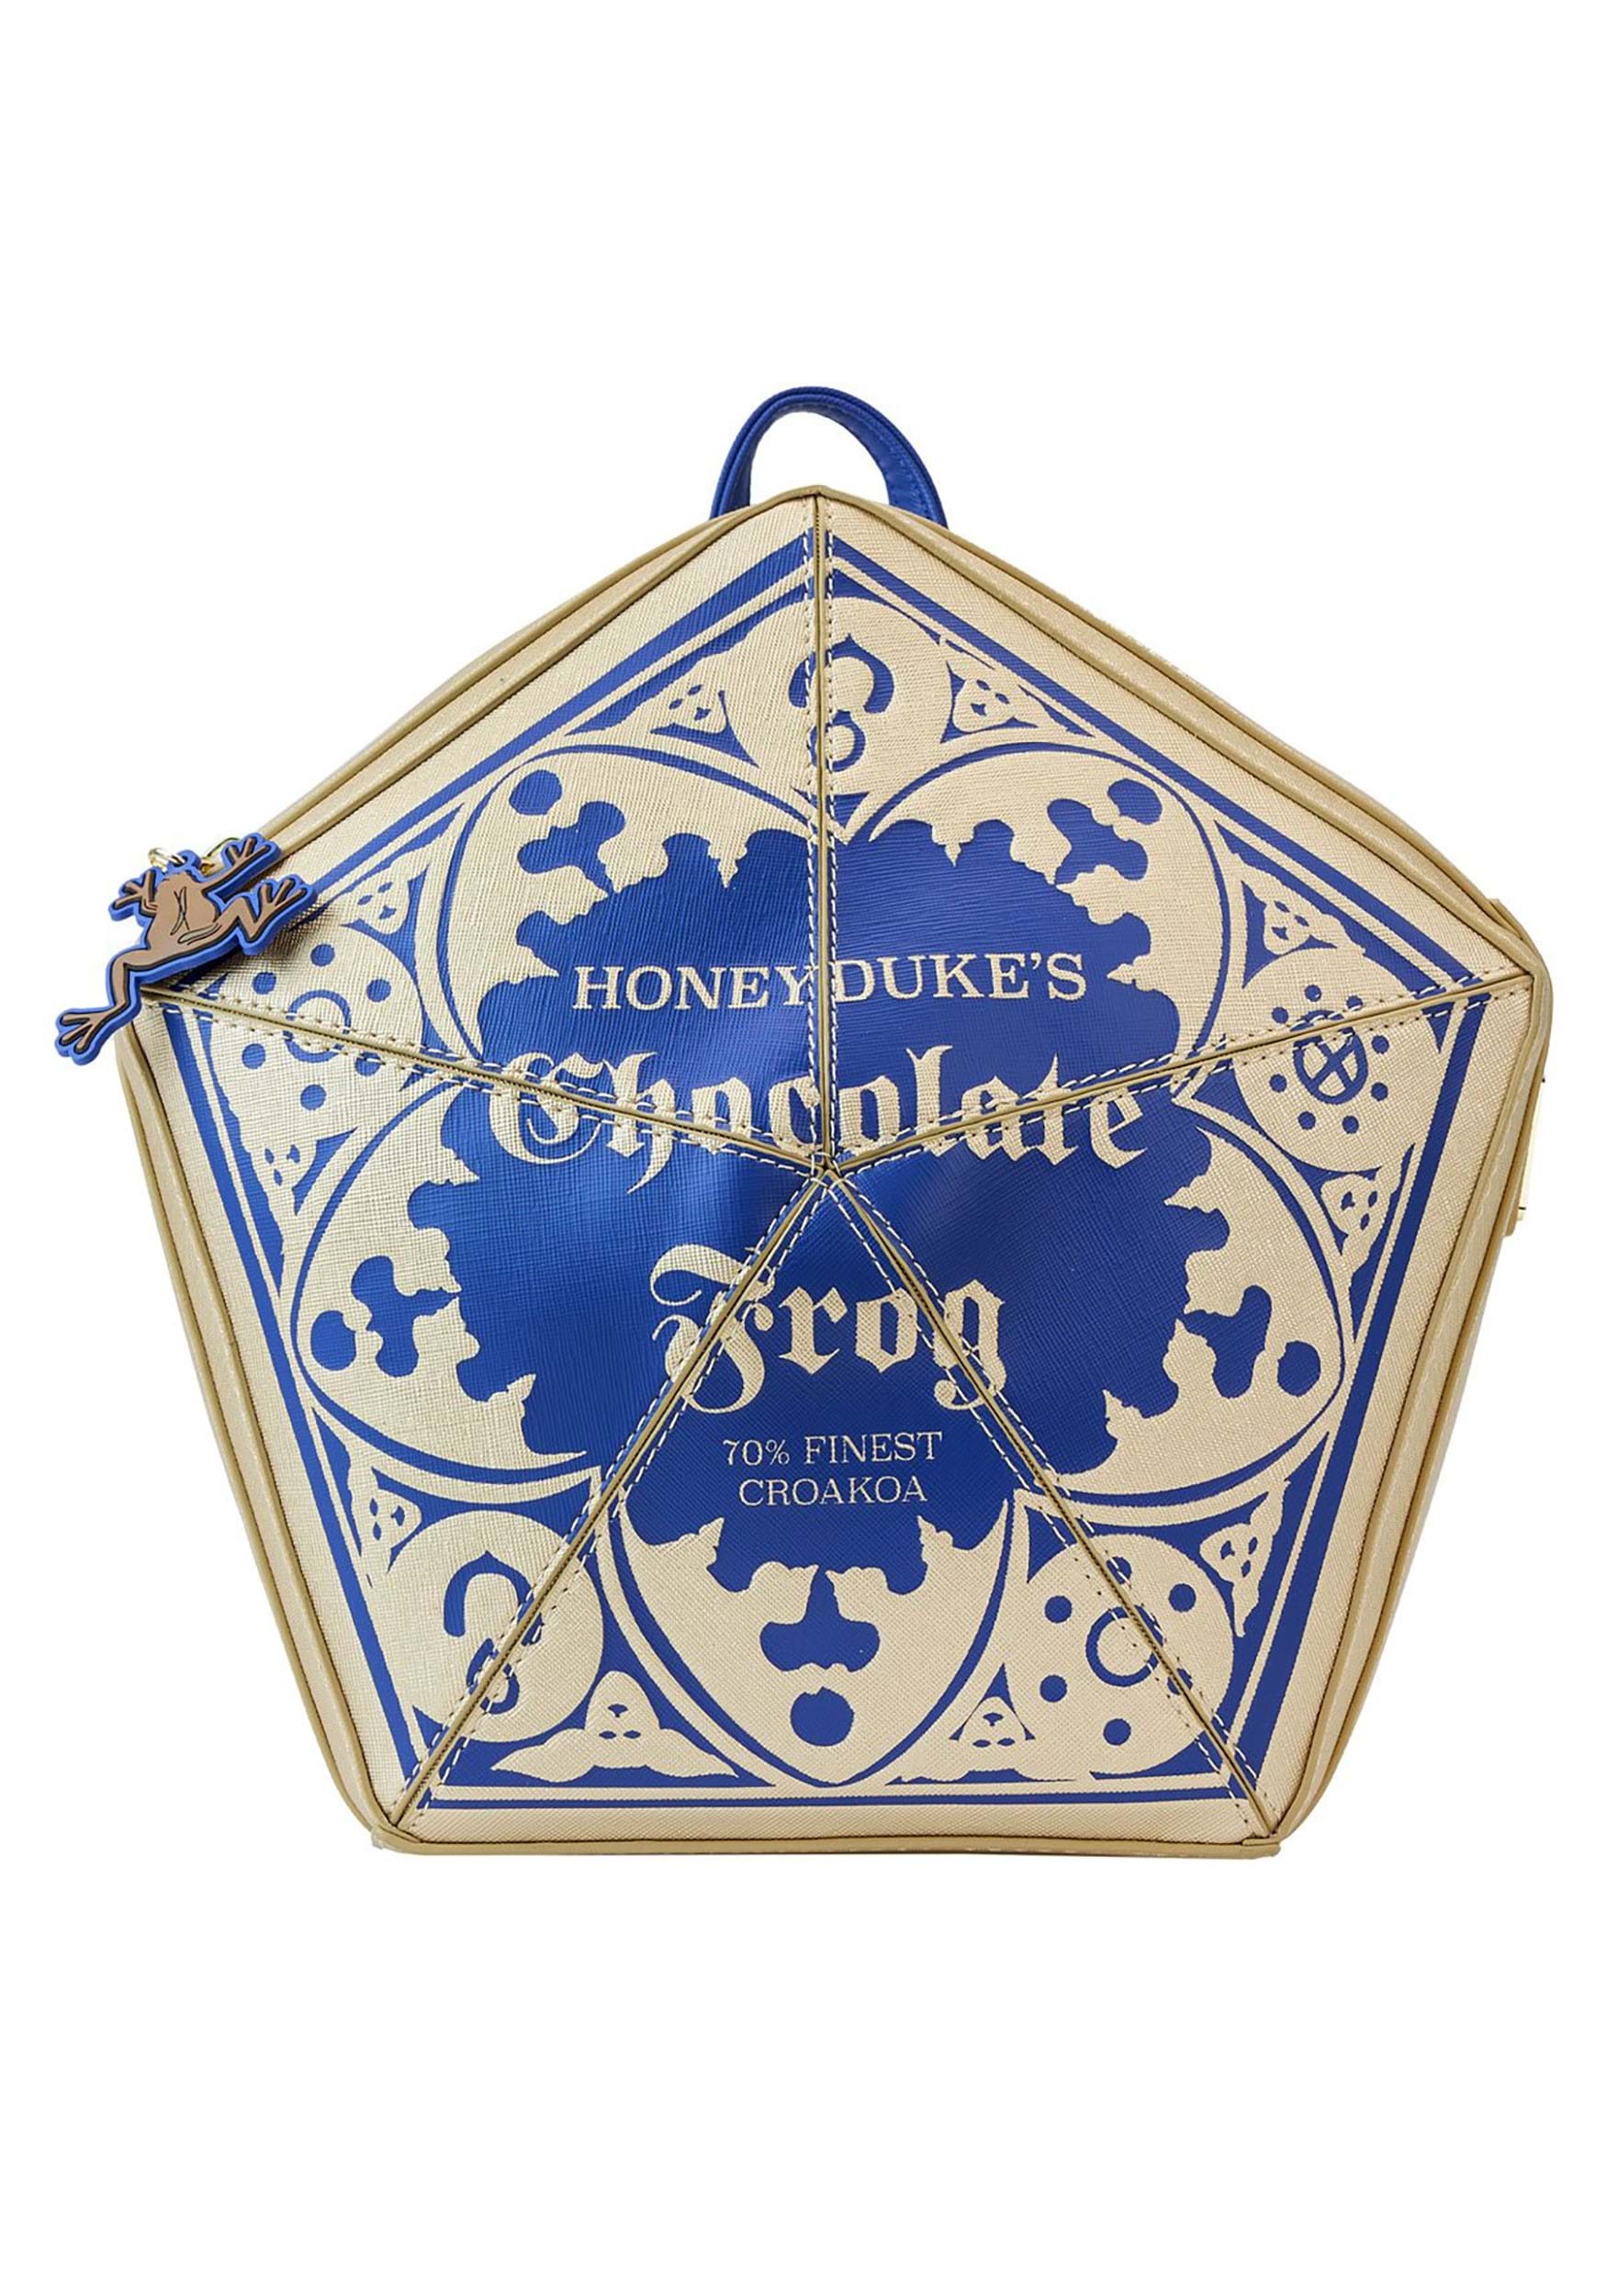 Harry Potter Honeydukes Chocolate Frog Loungefly Mini Backpack